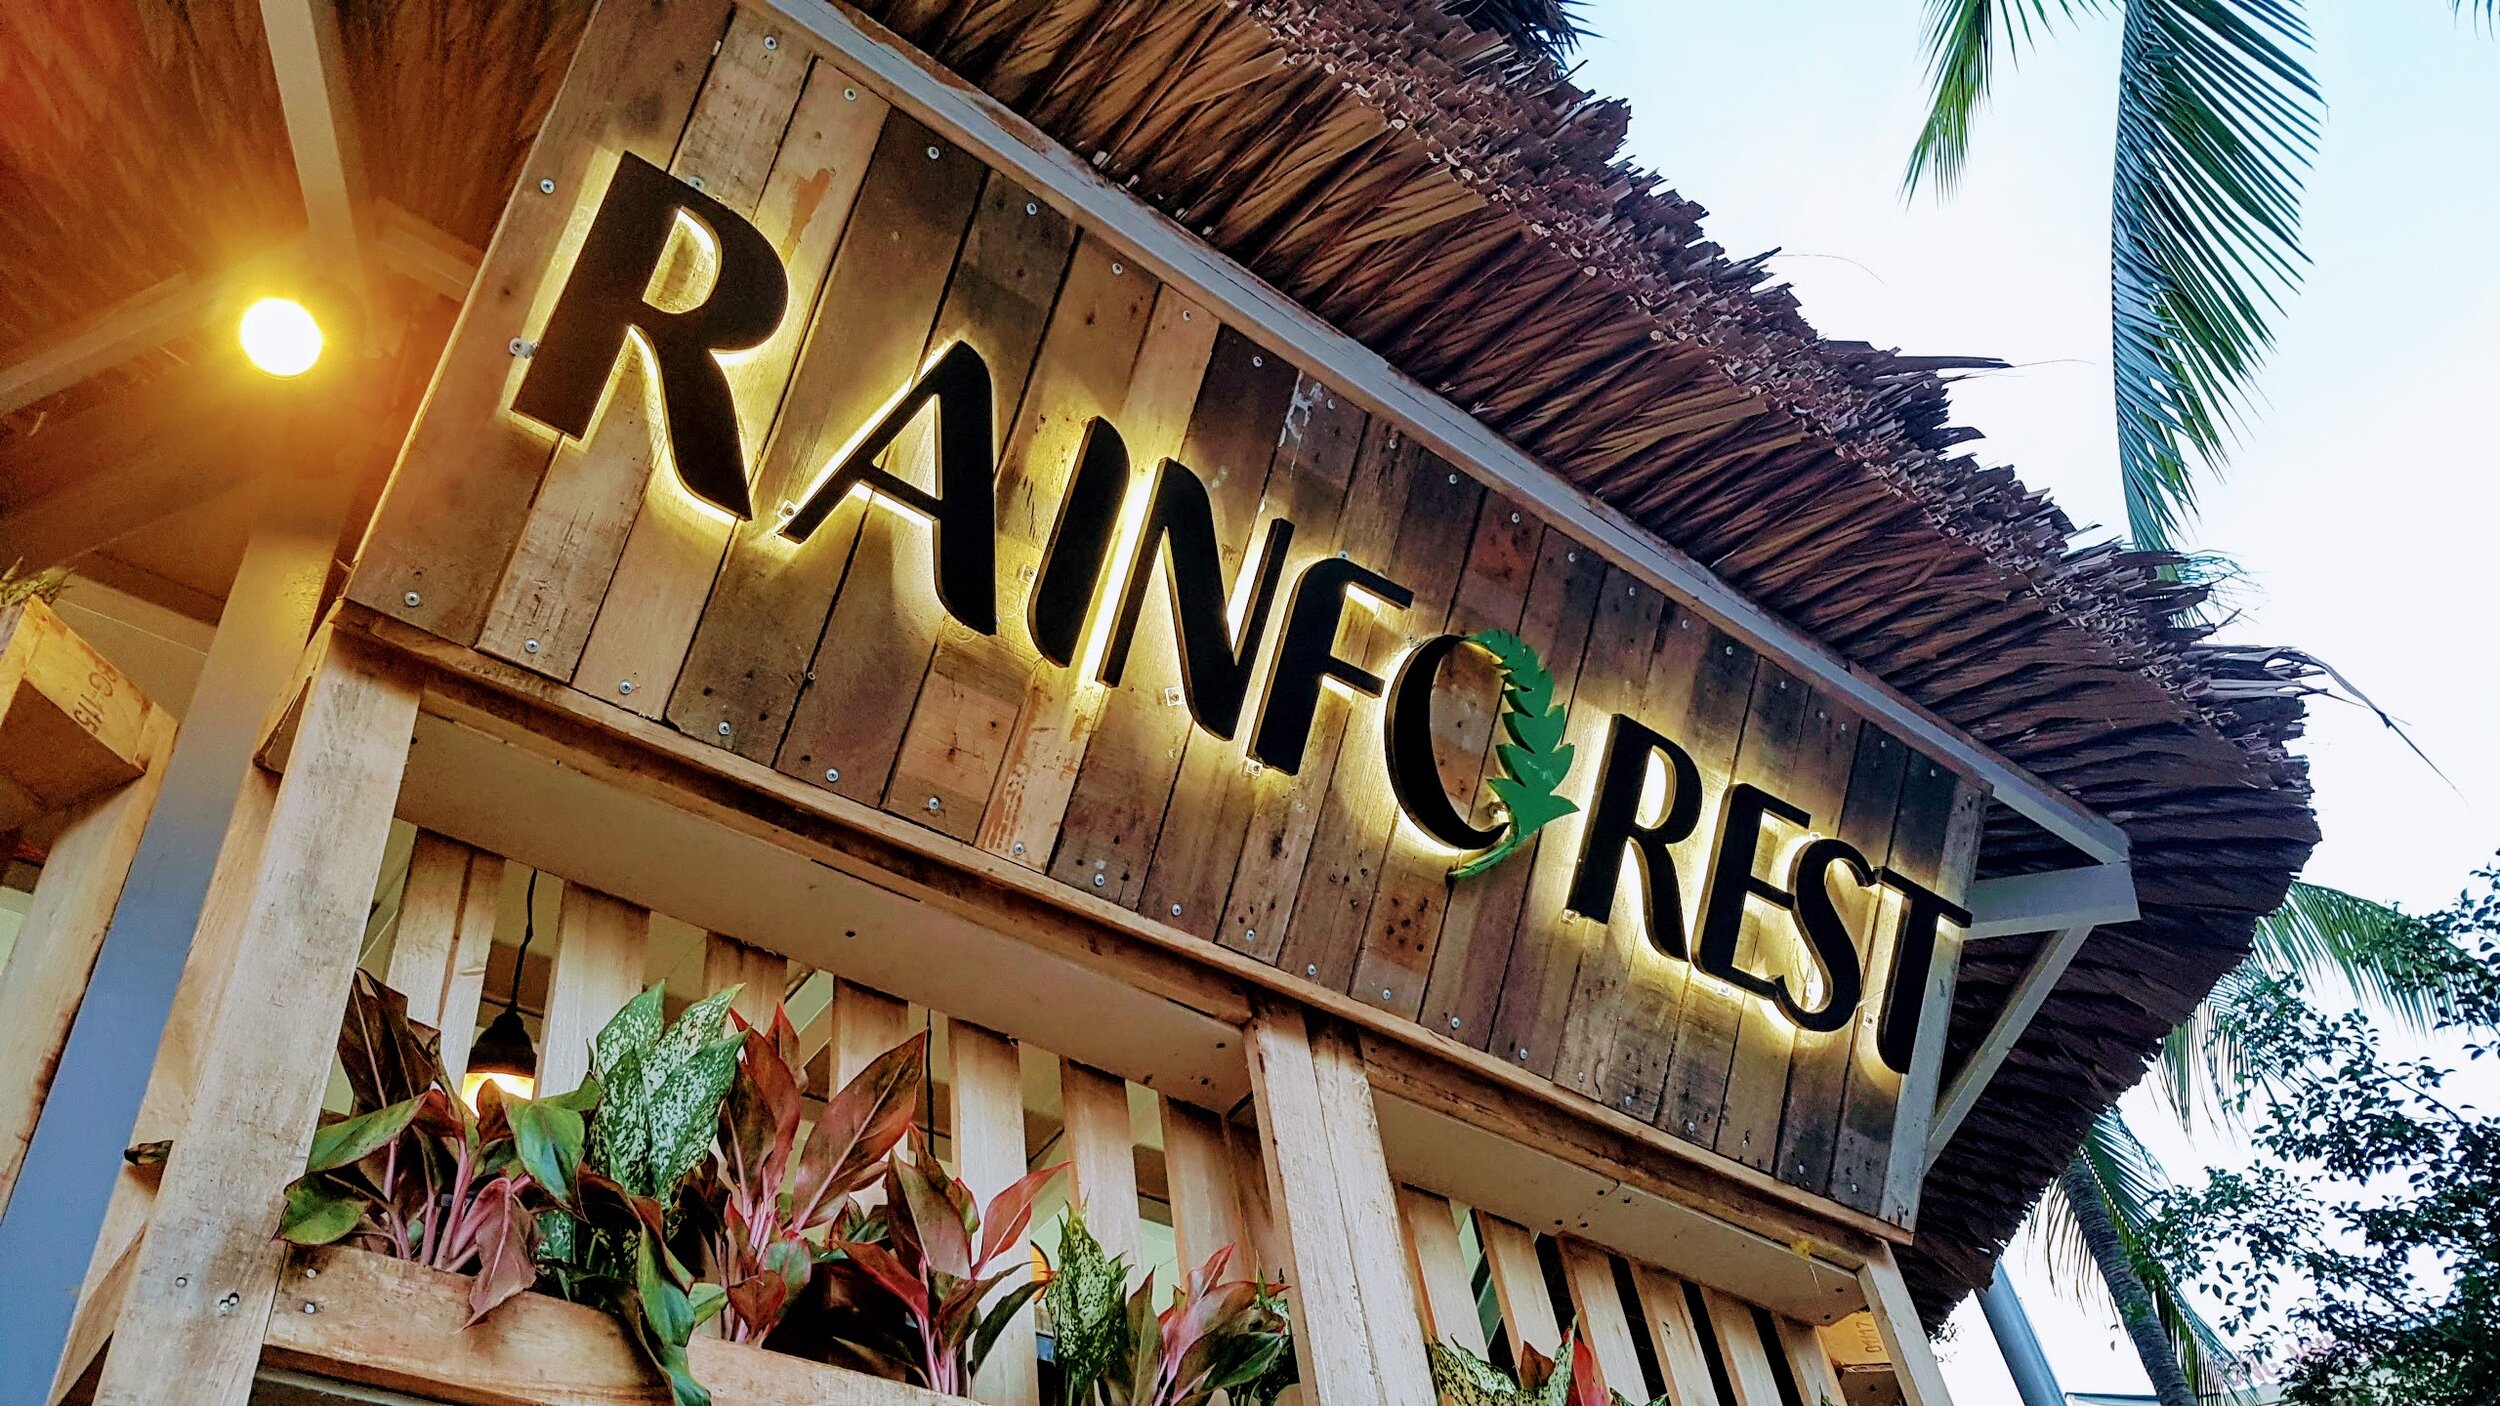 Rainforest Nha Trang - Cafe đẳng cấp, kiến tạo không gian xanh hoàn hảo